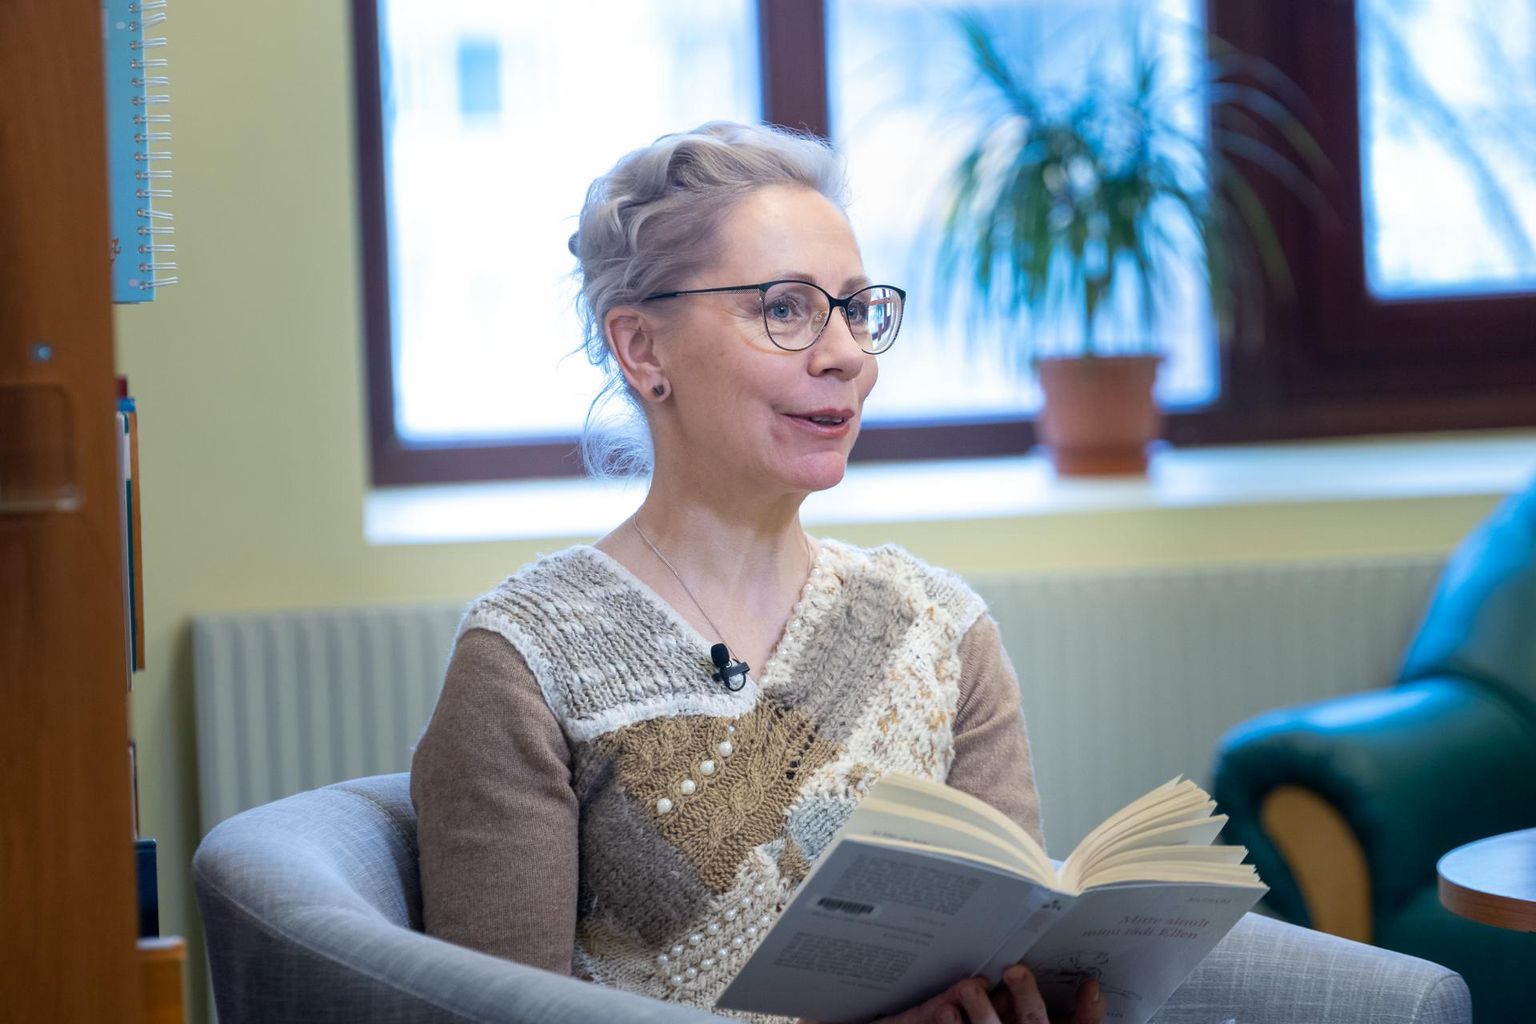 Raamatukogude aasta avamisel Lääne-Virumaa keskraamatukogus luges Mudlumi teost näitleja Tiina Mälberg.